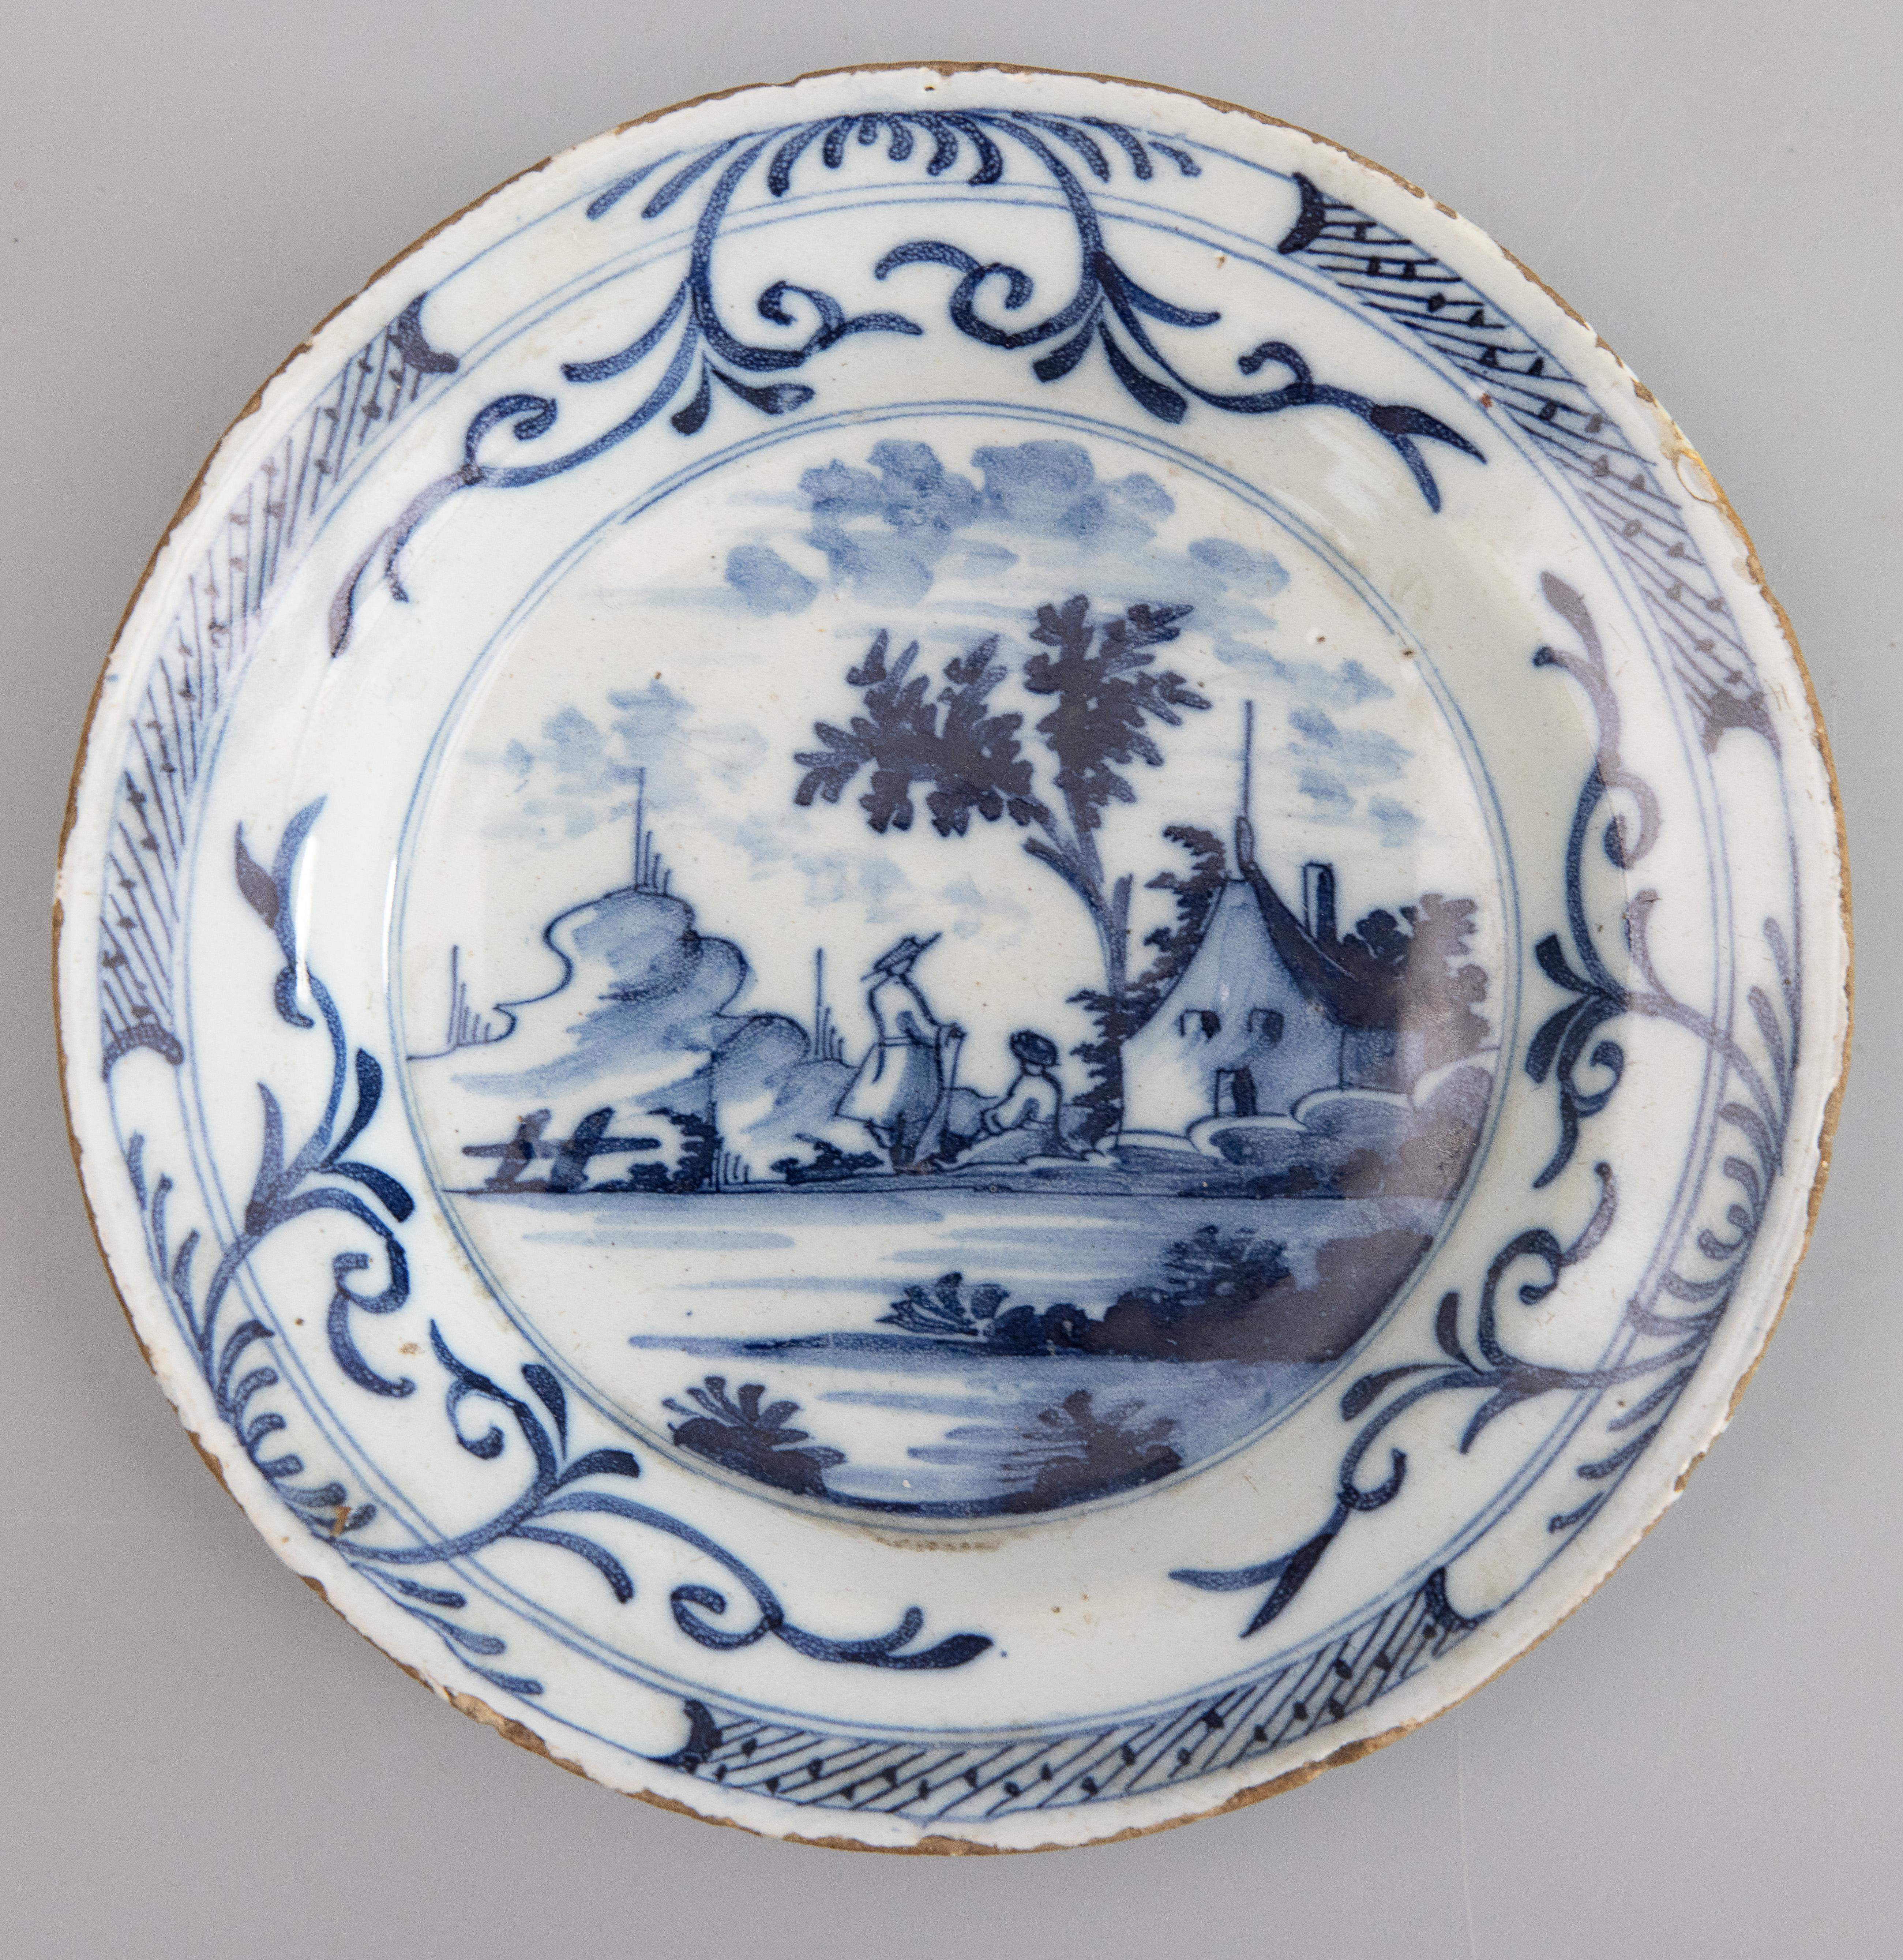 Ein seltenes Paar kleiner Teller im Chinoiserie-Stil aus niederländischer Delft-Fayence des 18. Jahrhunderts mit handgemalten kobaltblauen und weißen Figuren in einer Landschaftsszene. Ein Teller ist durchbohrt, da dies eine alte Art war, Teller